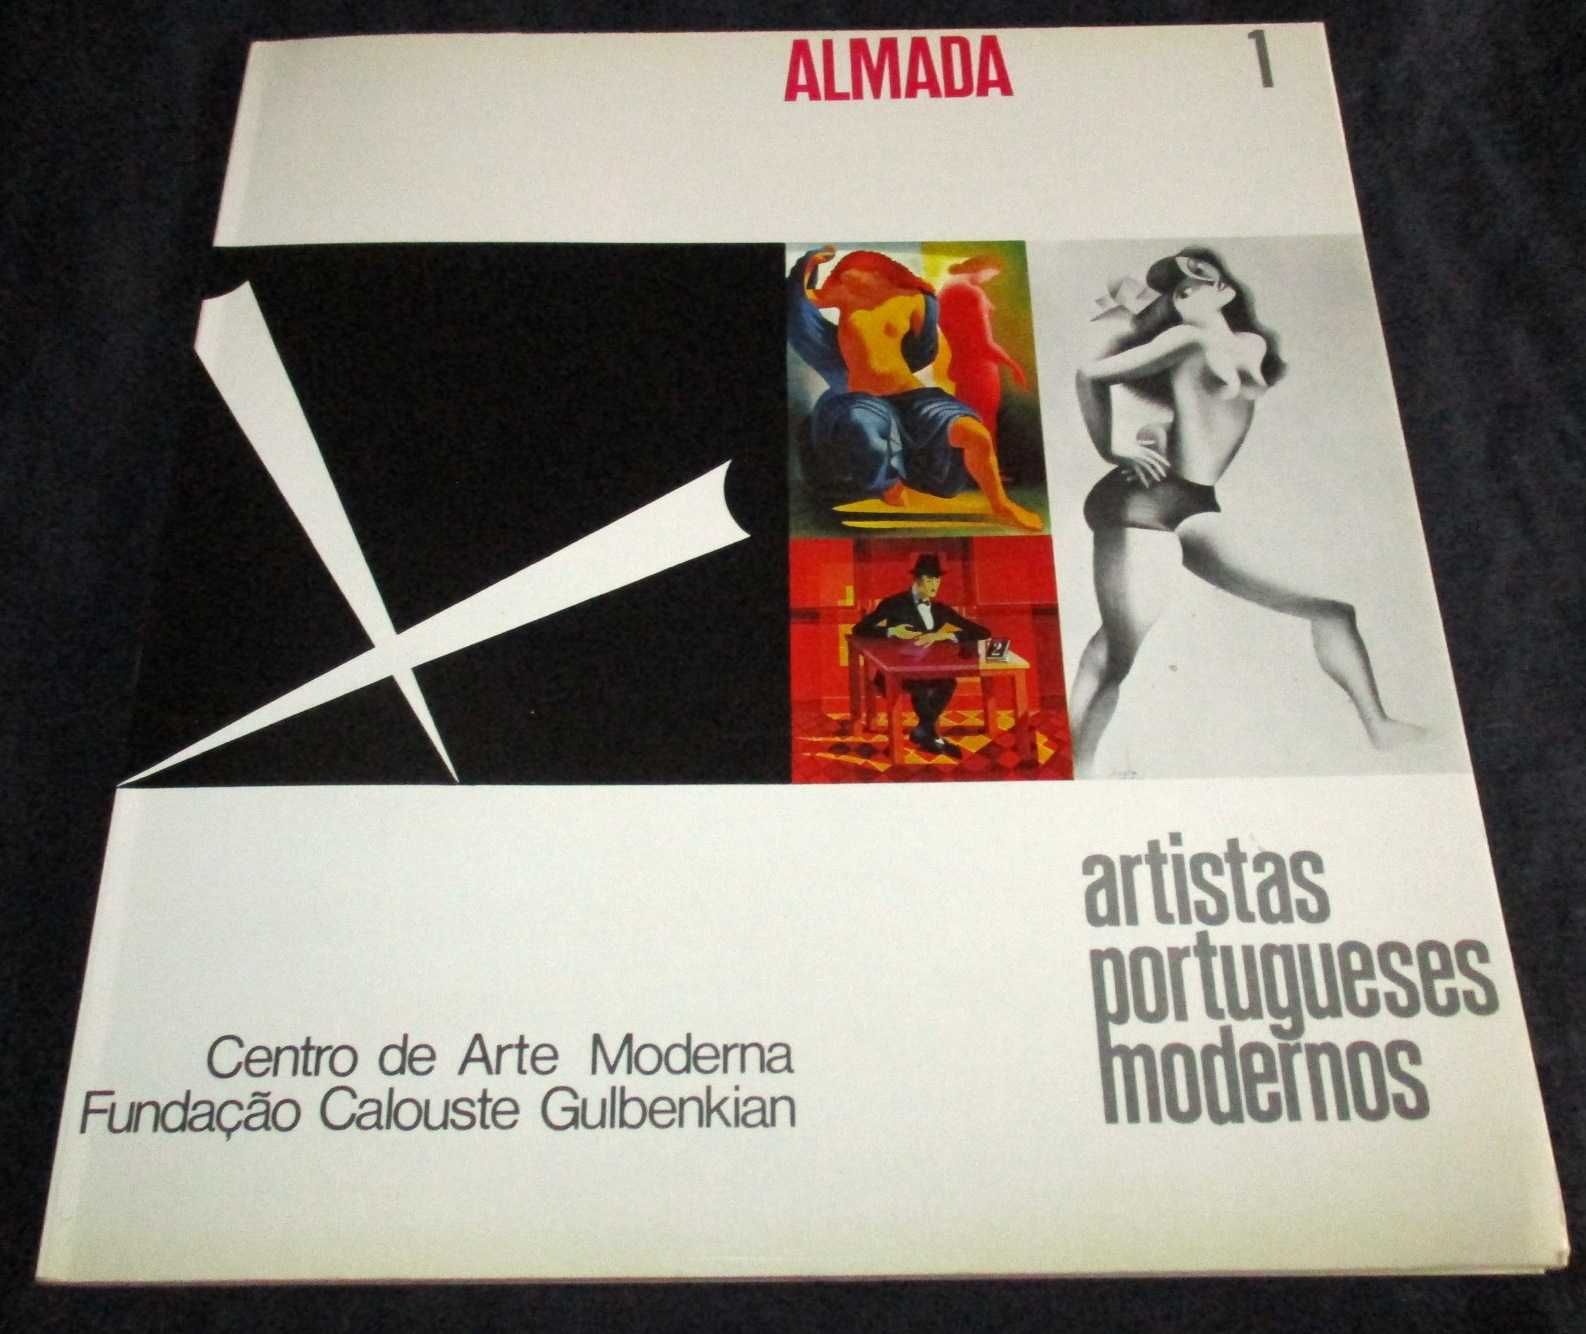 Livro Artistas Portugueses Modernos 1 Almada com 12 Slides